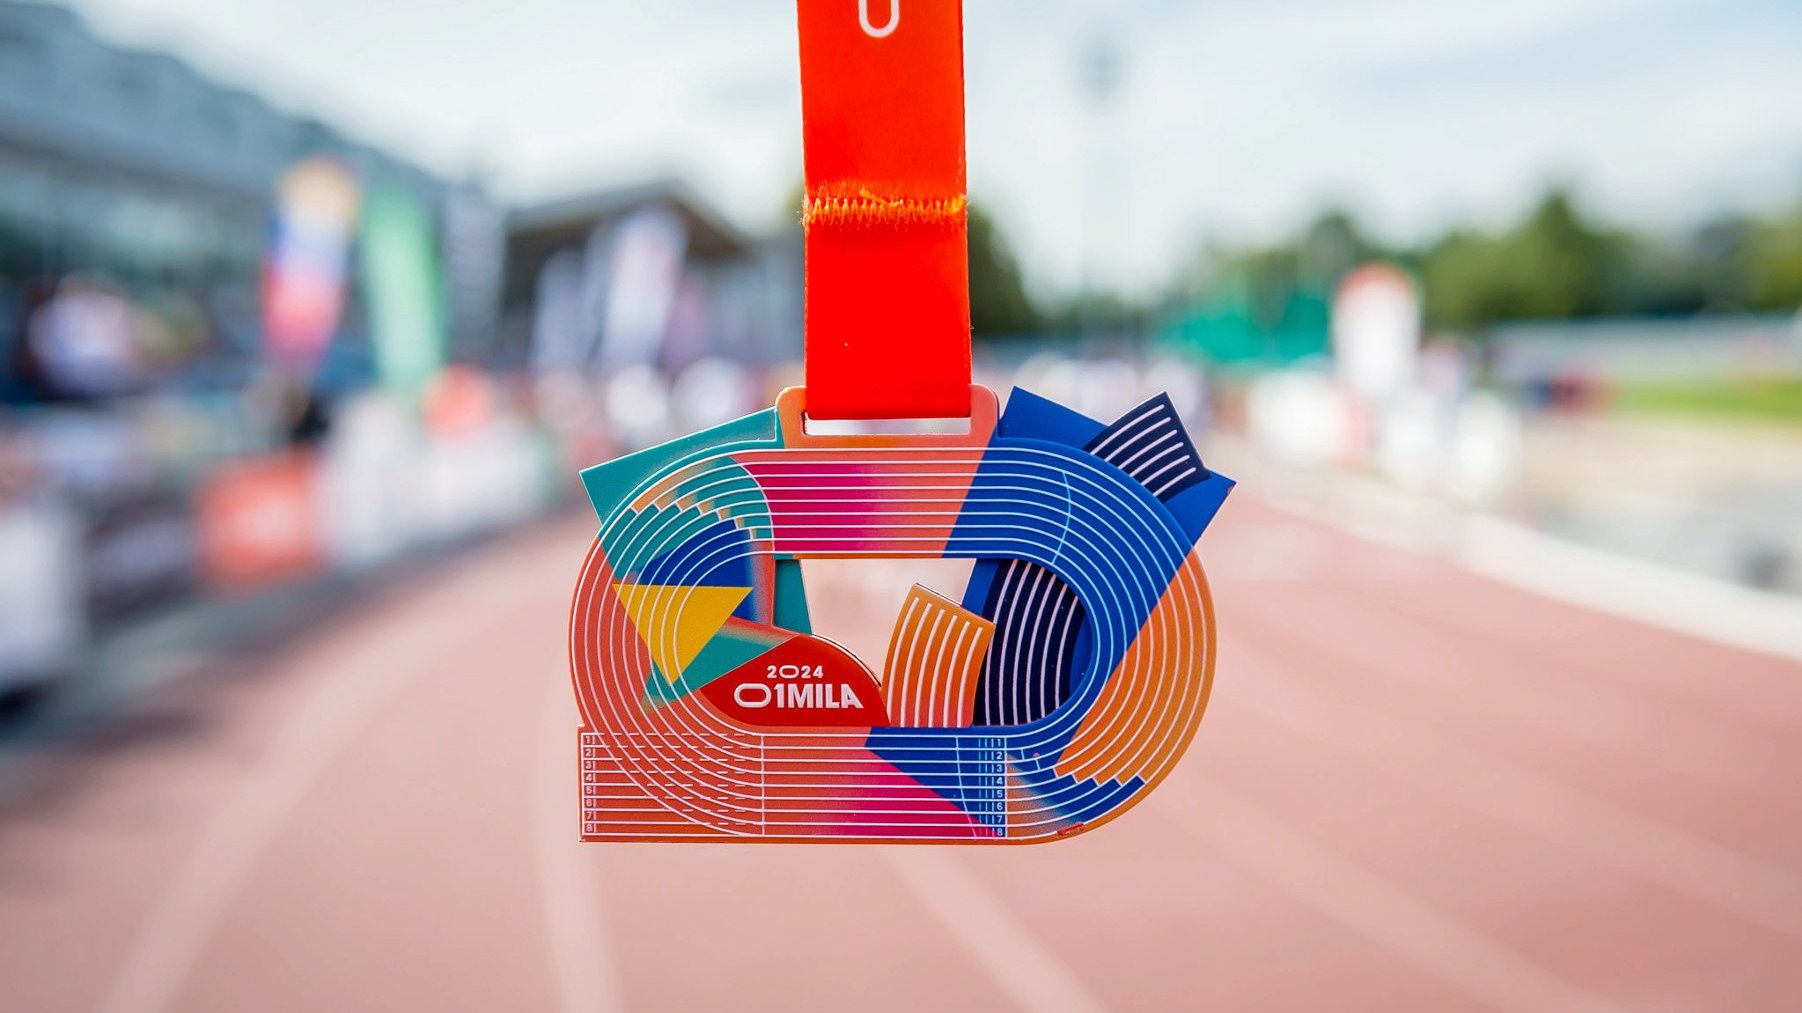 Zbliżenie na medal, który otrzymują uczestnicy po skonczeniu biegu. Medal przypomina tor atletyczny.